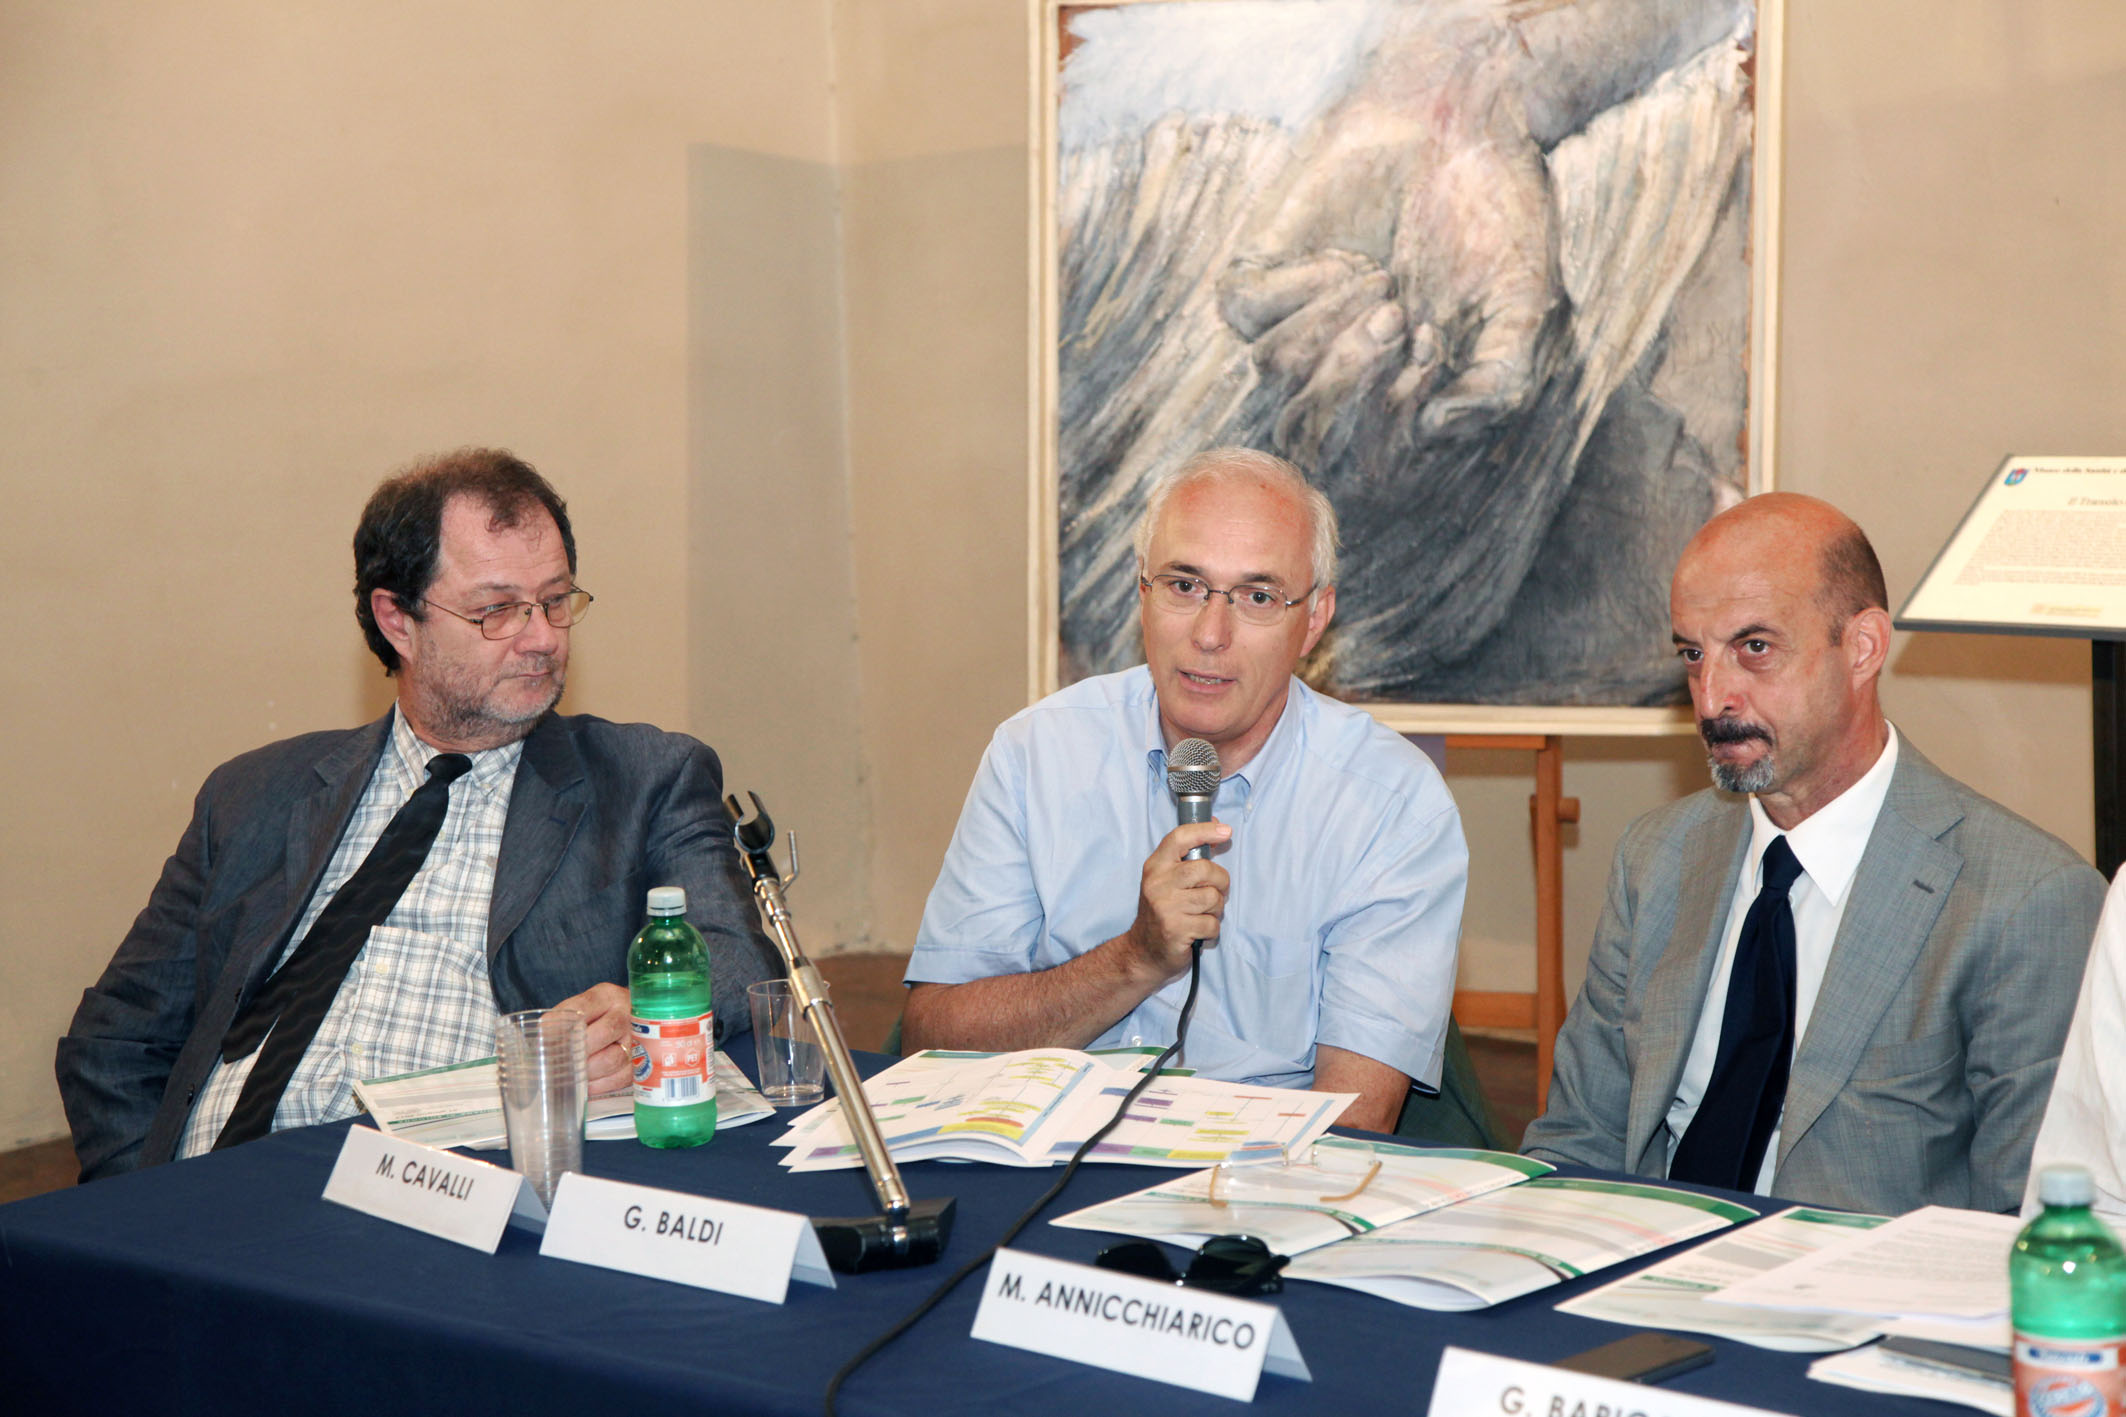 Mario Cavalli, Giovanni Baldi e Massimo Annicchiarico